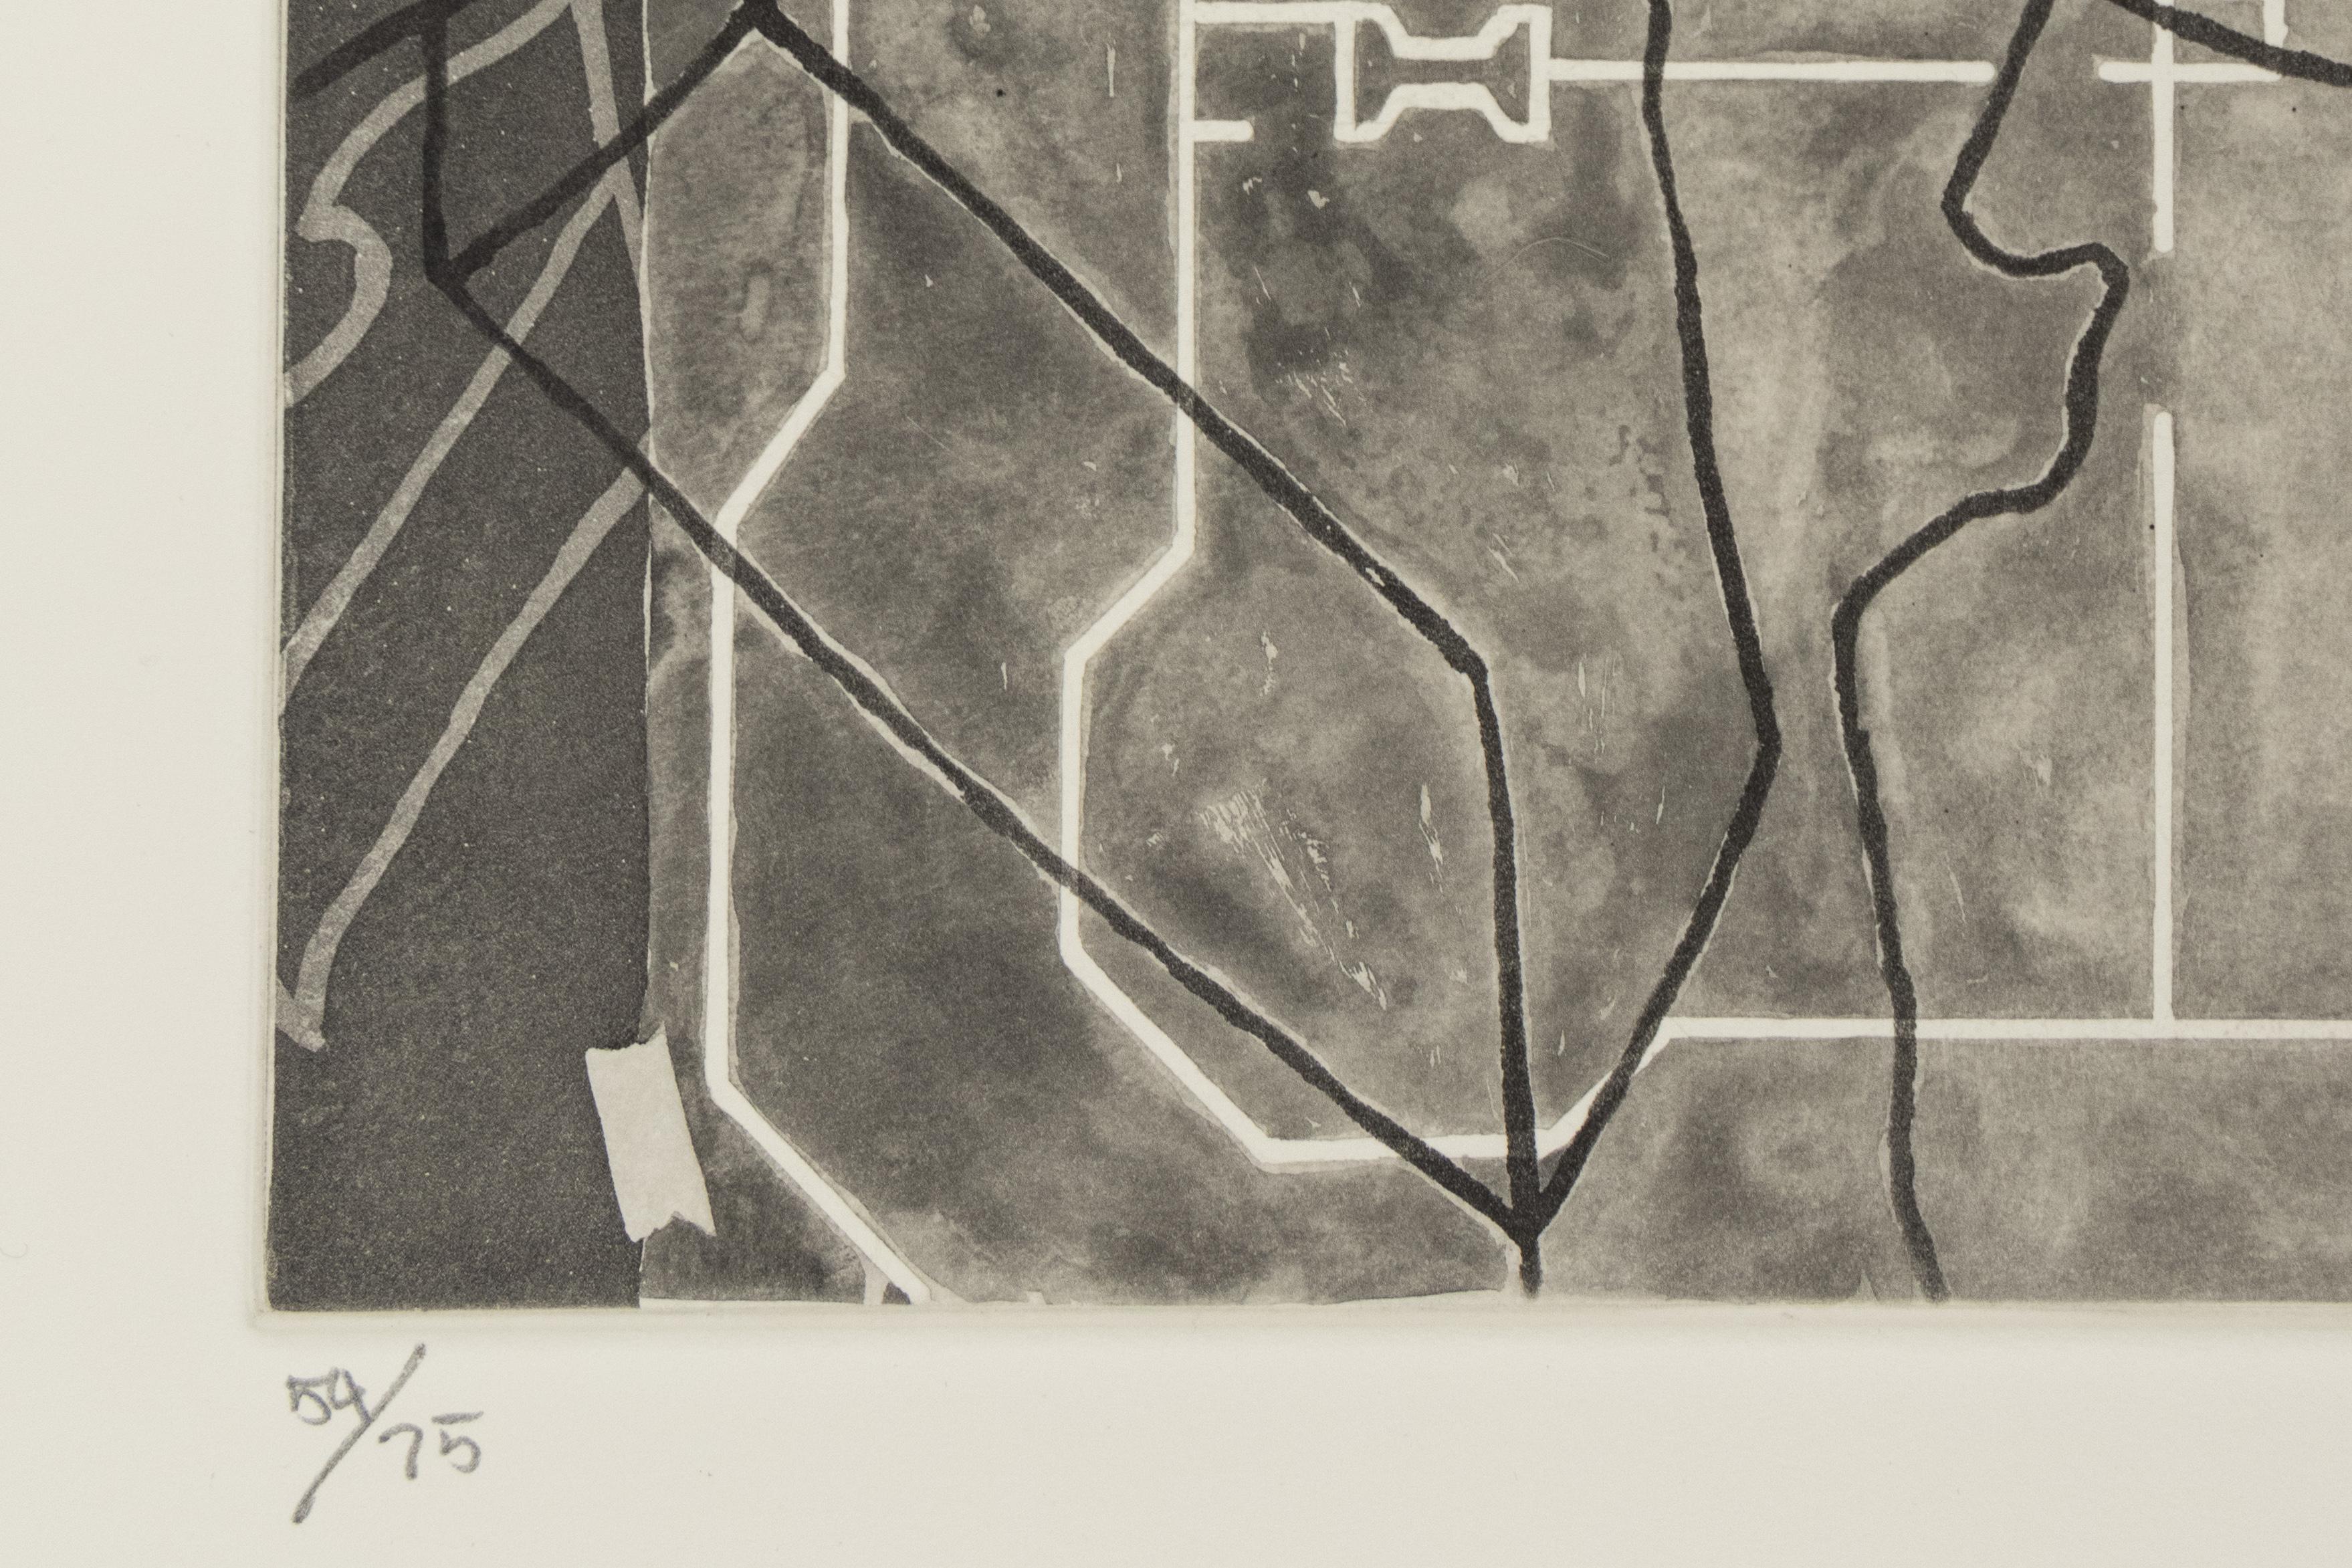 Einfarbige Radierung auf Hahnemühle-Kupferdruckpapier (Auflage: 75 + 15 APs)
Signiert, datiert und nummeriert mit Bleistift, recto

30 x 22 Zoll, Blatt
17.5 x 12 Zoll, Bild

Dieses Kunstwerk wird von ClampArt mit Sitz in New York City